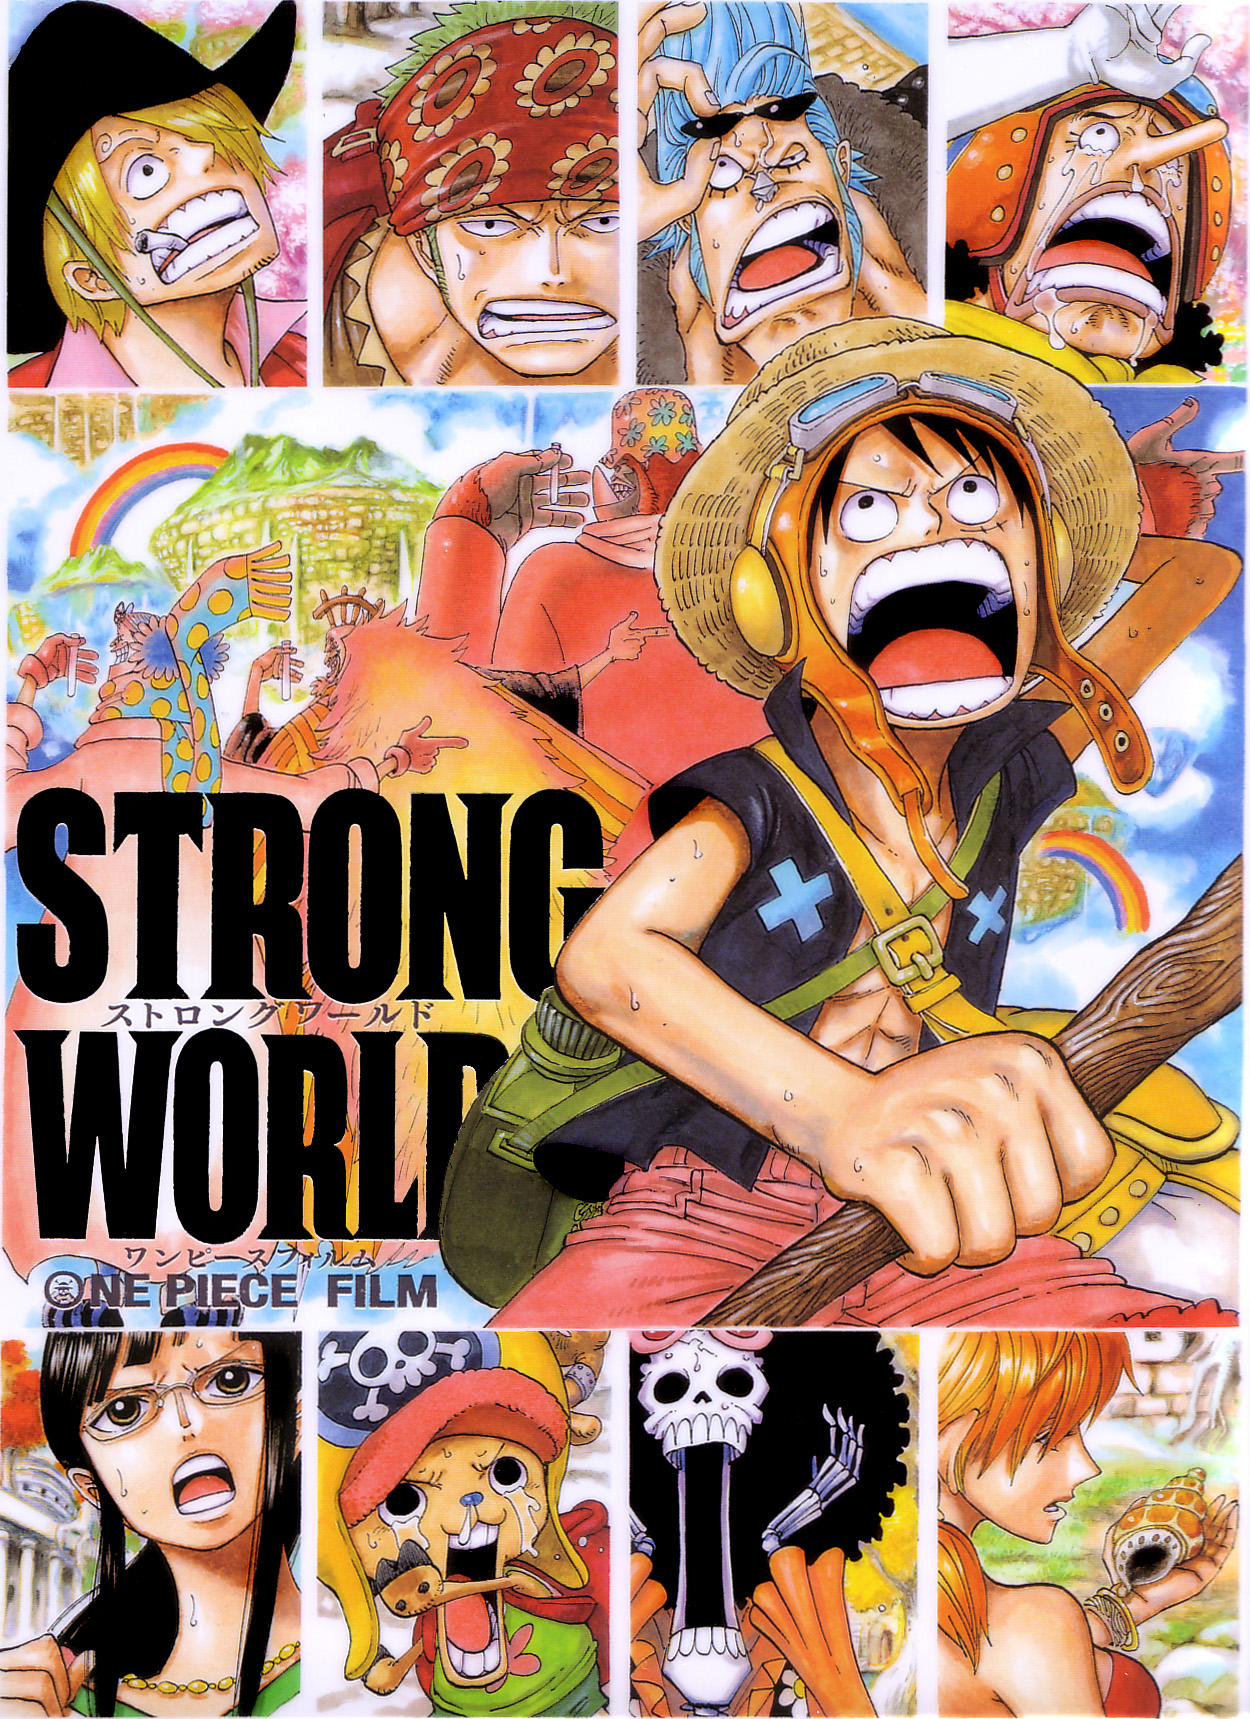 One Piece Film: Red (English Dub) One Piece Film: Red (English Dub) - Watch  on Crunchyroll